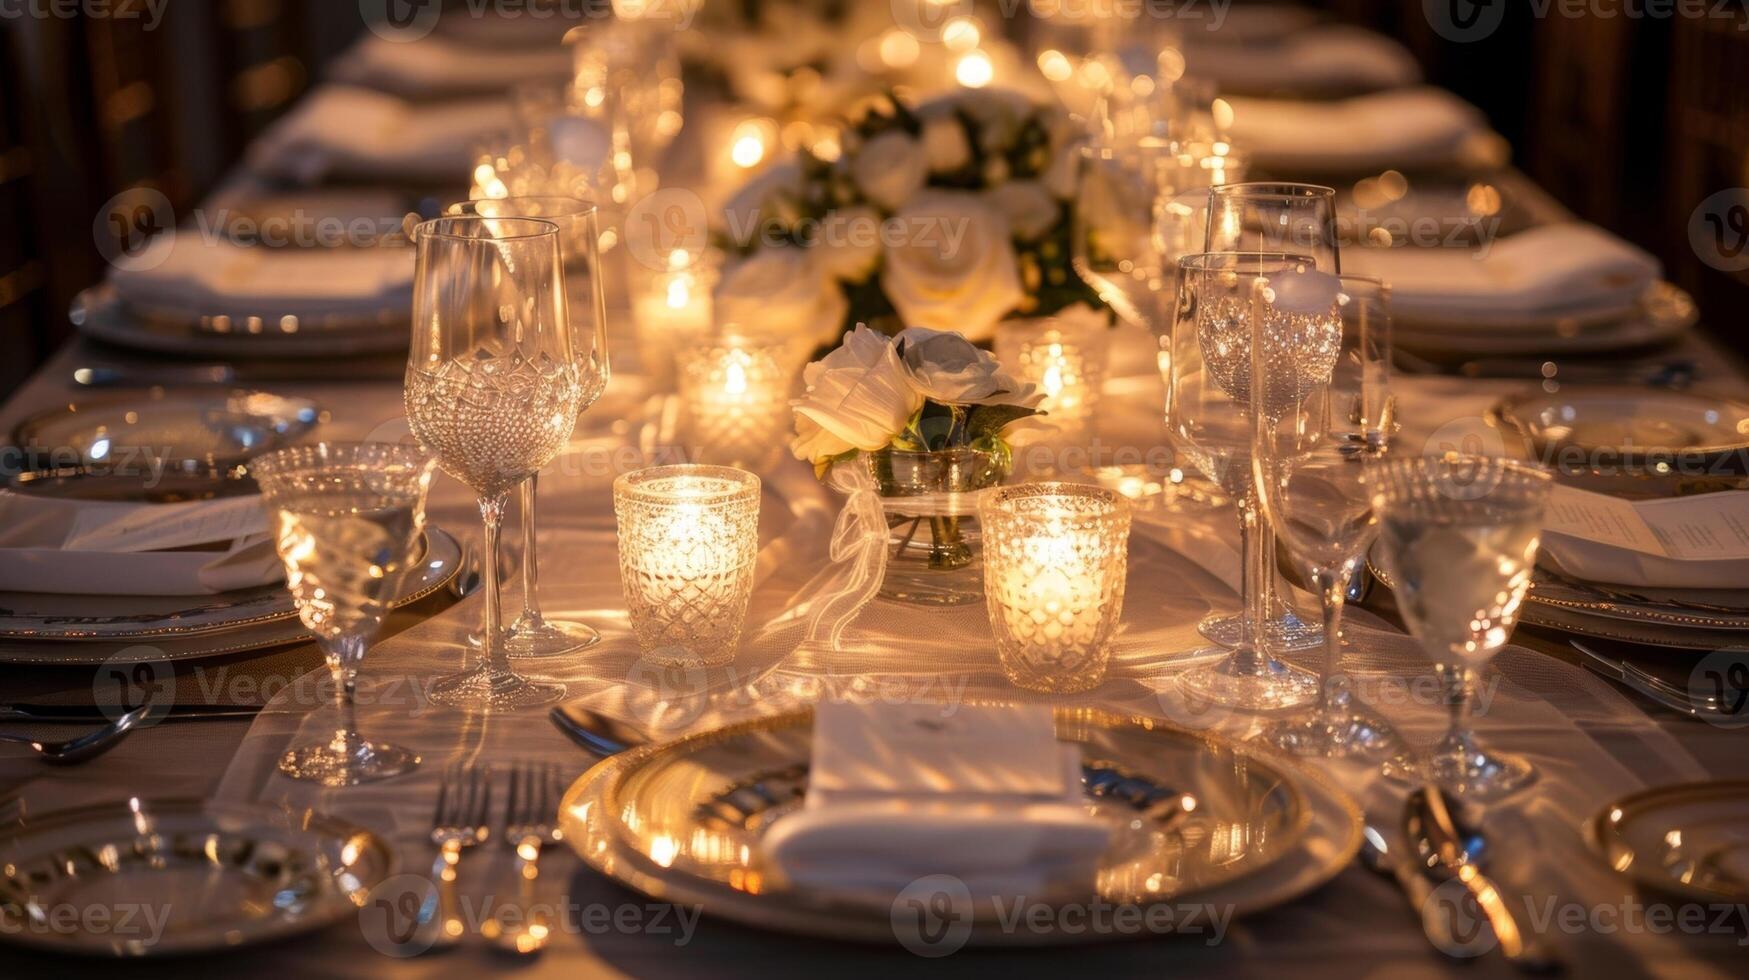 el suave calentar ligero de el velas refleja apagado el pulido cubiertos y cristal lentes creando un maravilloso y lujoso paisaje de mesa. 2d plano dibujos animados foto